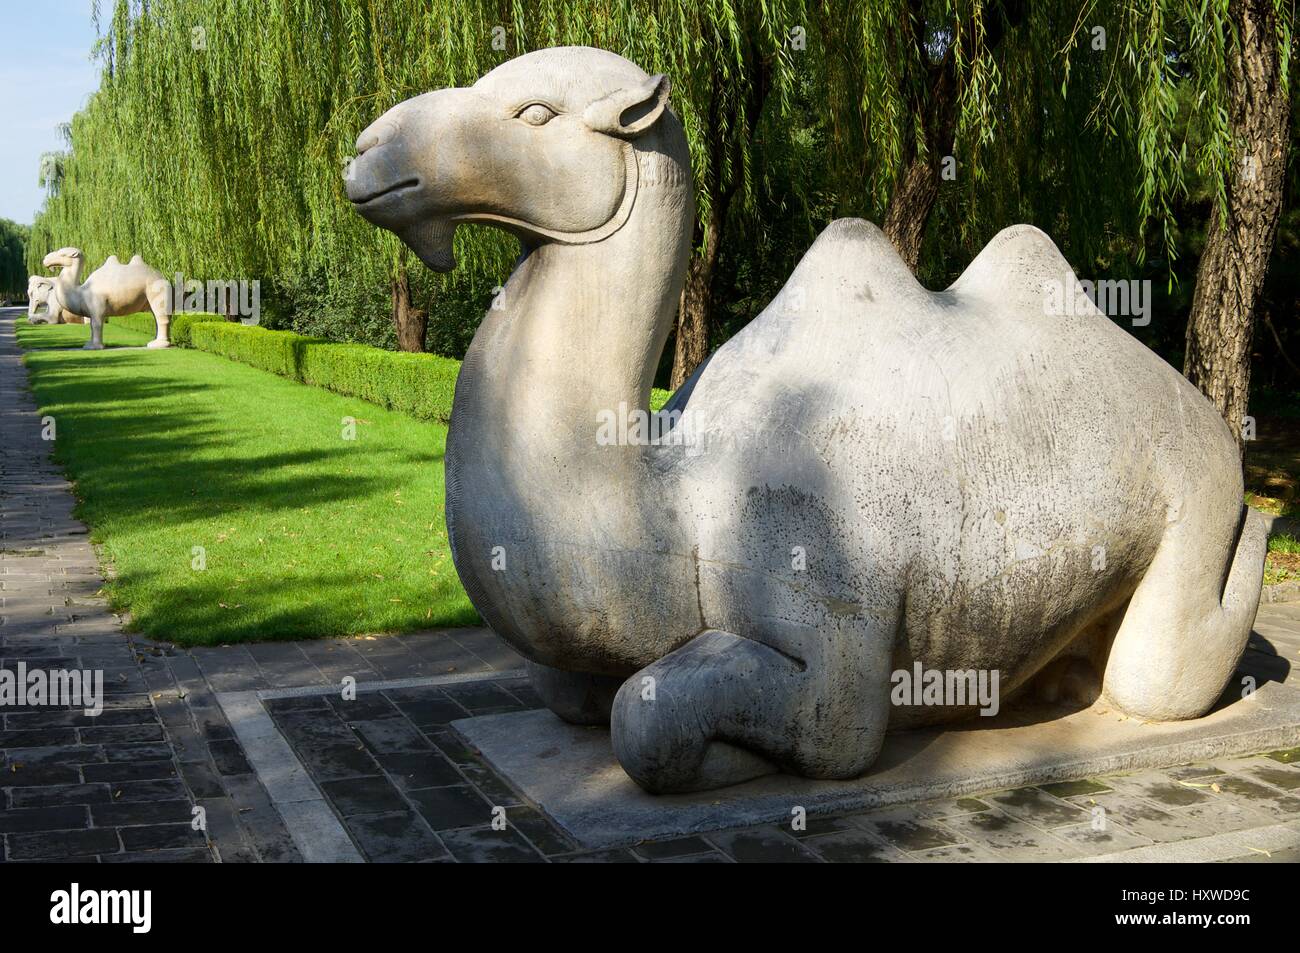 Statue eines stehenden Kamels in der allgemeinen Heiligen Weg die Ming-Gräber. Es wurde zwischen 1435 und 1540 errichtet. Shisanling, Peking, China Stockfoto